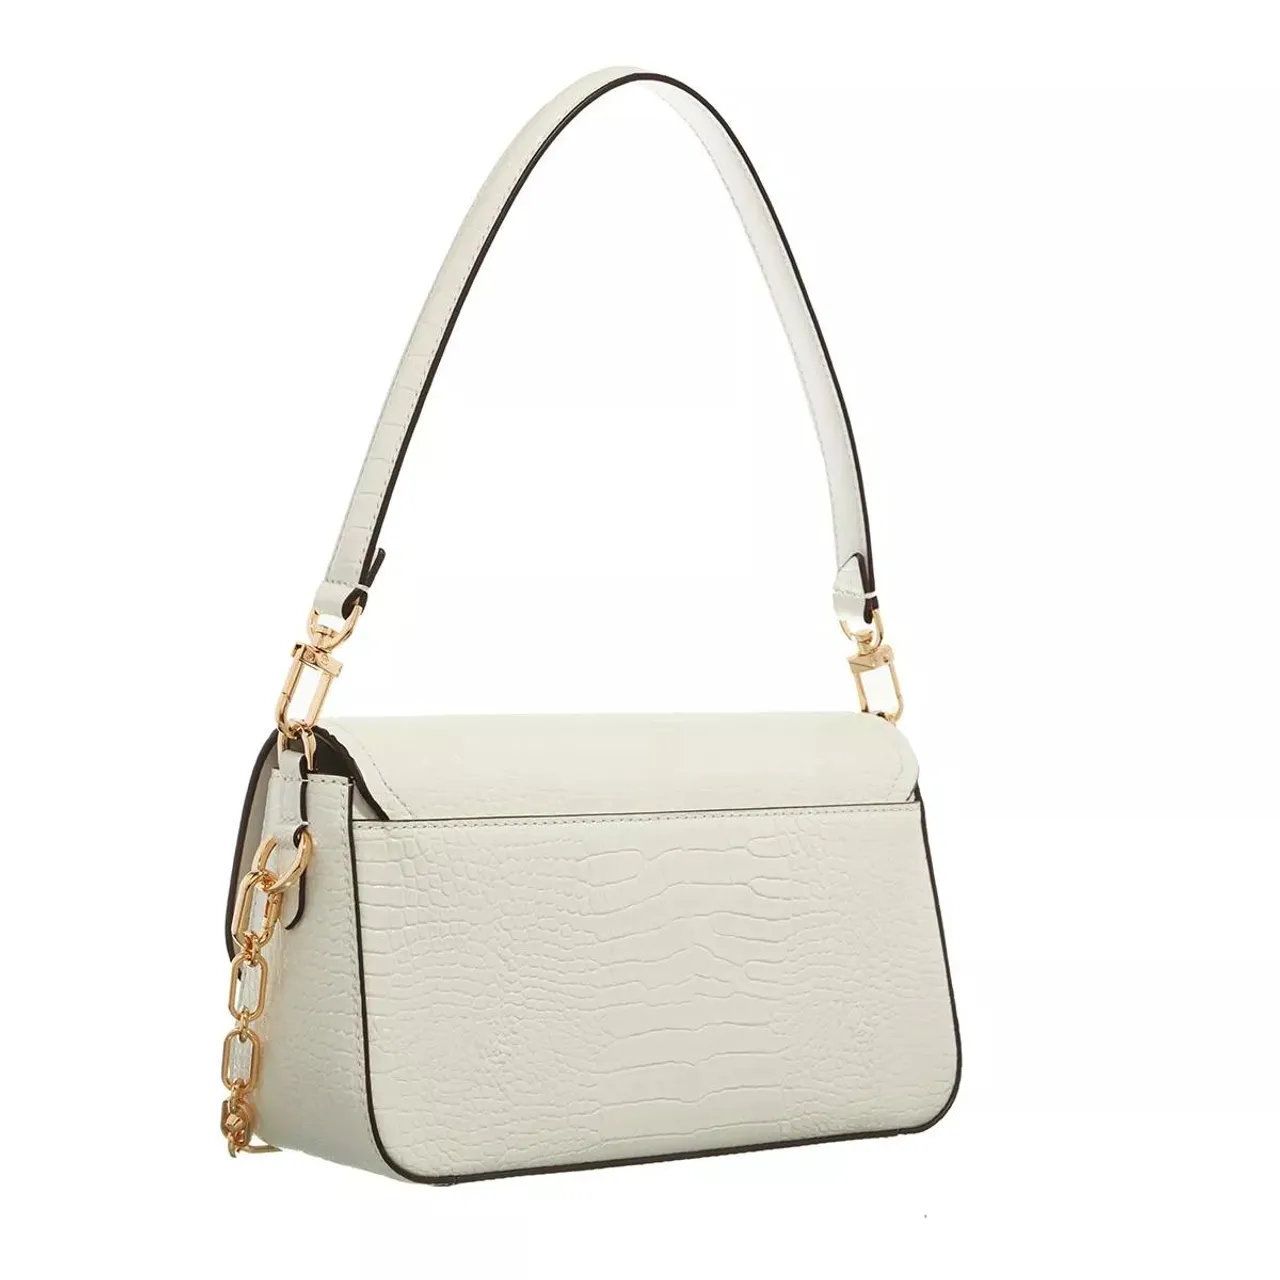 Michael Kors Hobo Bags - Parker Medium Convertible Pouchette Shoulder - white - Hobo Bags for ladies